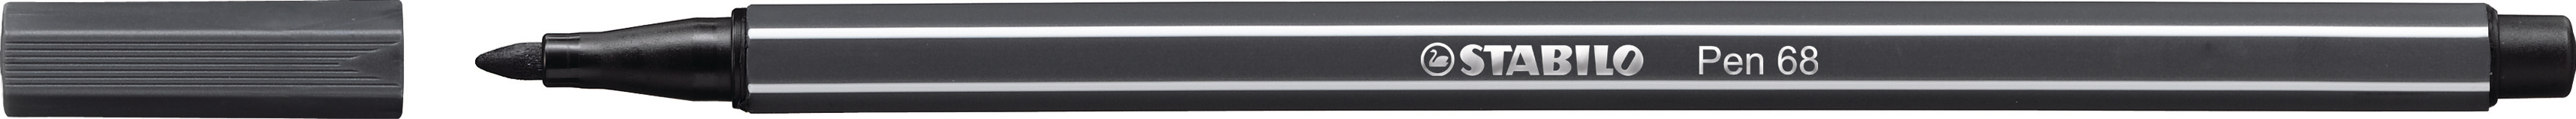 STABILO Stylo Fibre Pen 68 1mm 68/97 gris noir